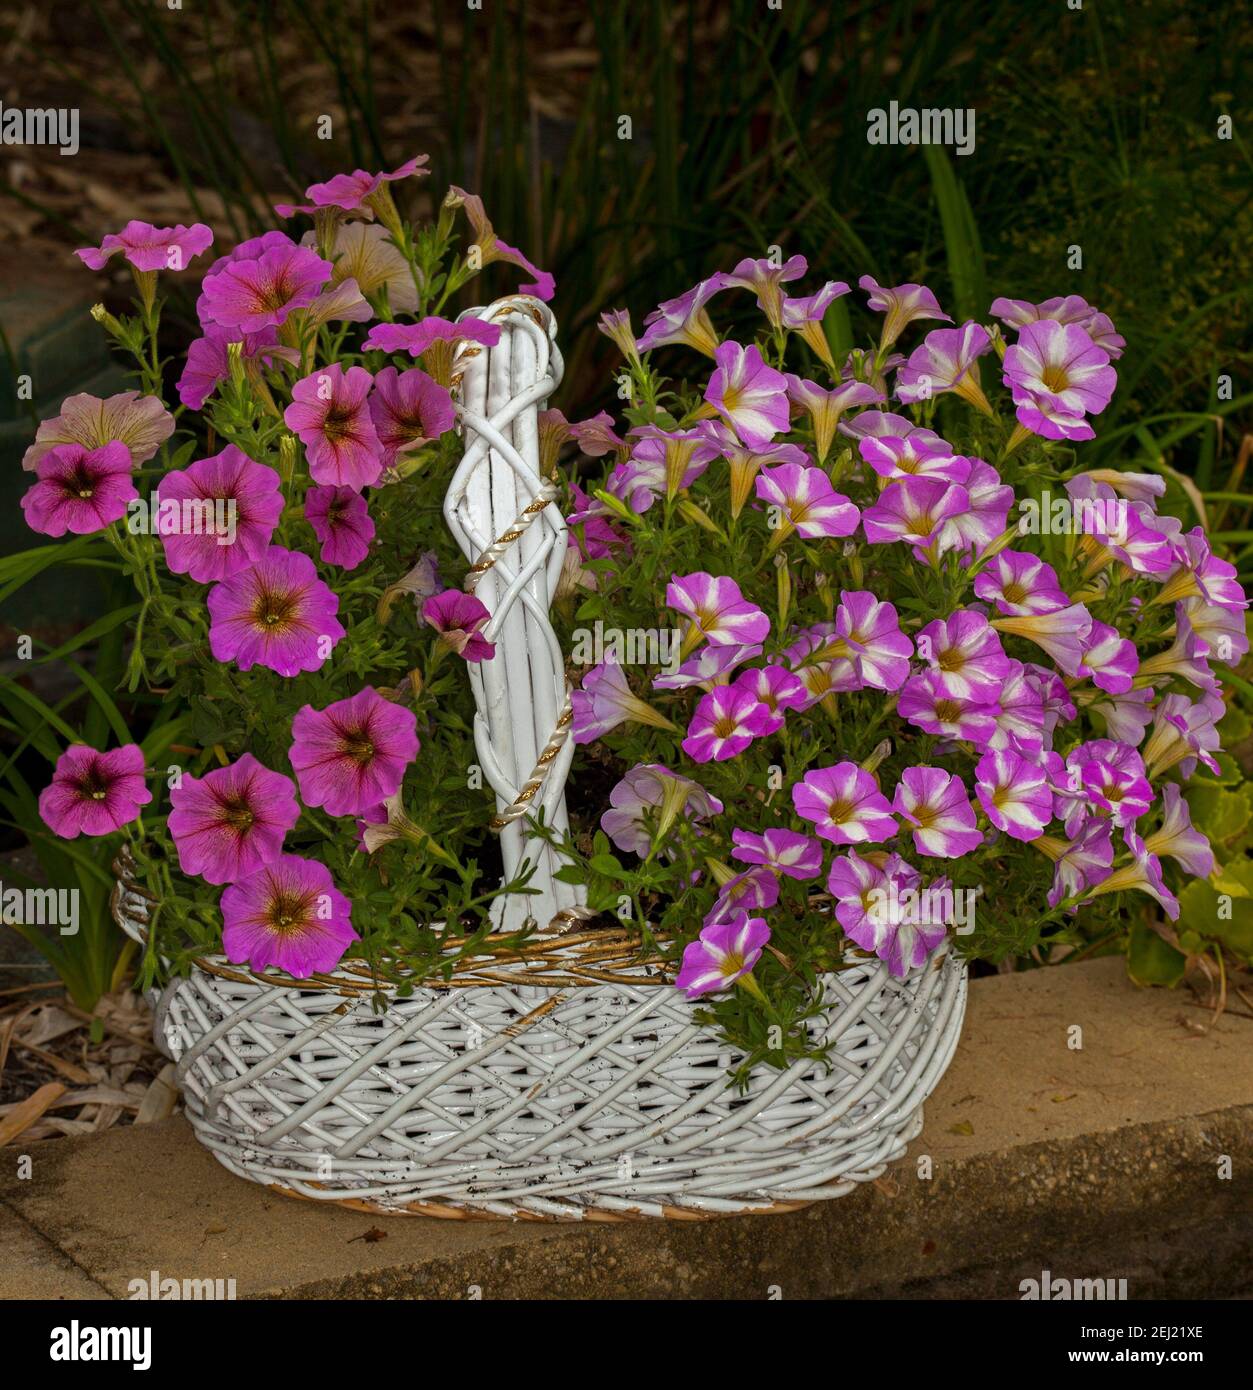 Contenedor de jardinería, masa de hermosas petunias de color rosa vivo y blanco floreciendo en un reciclado en gran cesta de mimbre blanco Foto de stock